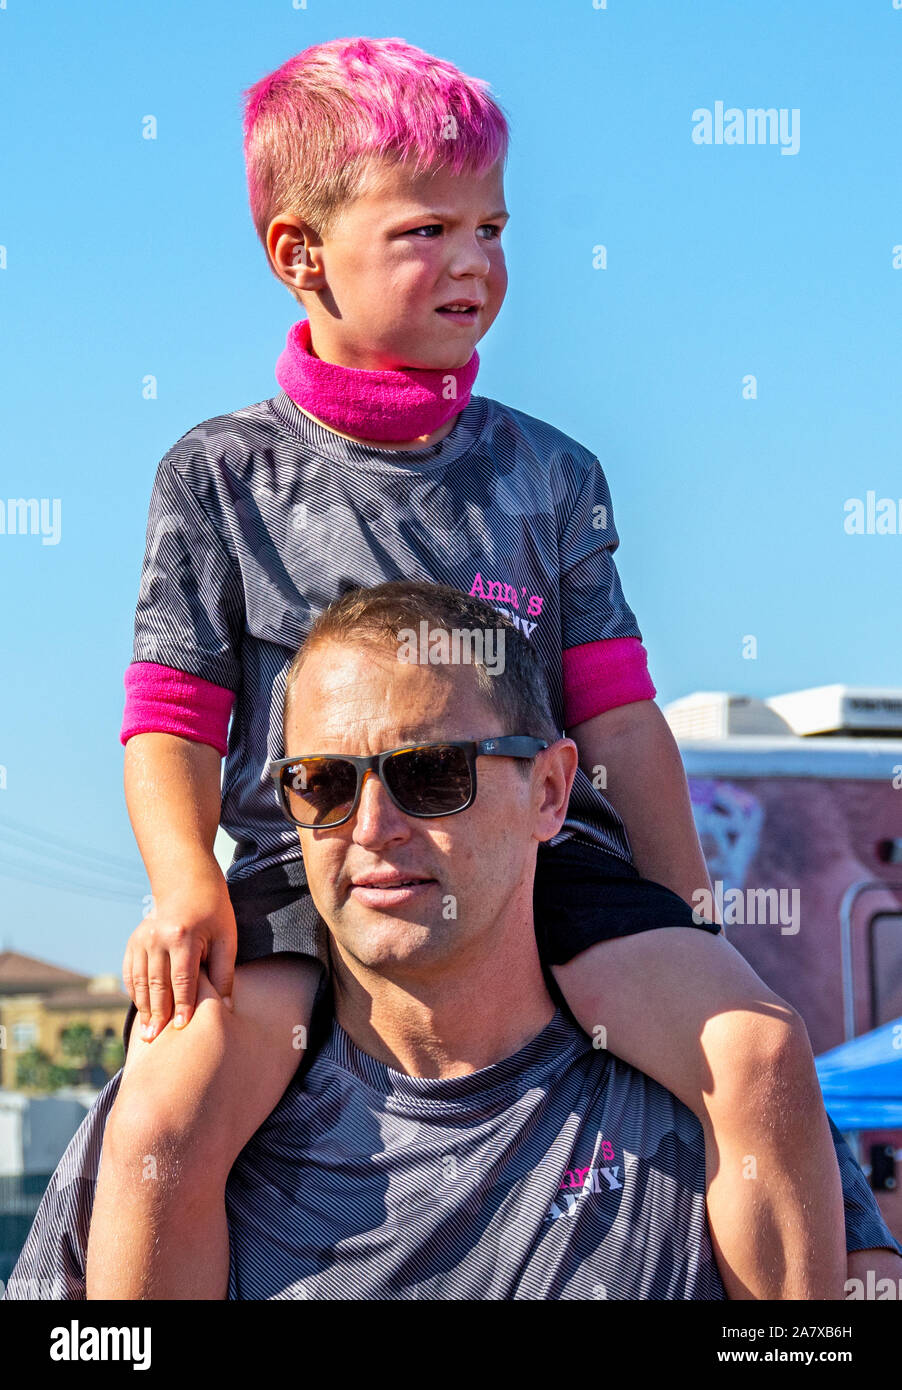 Anaheim, Californie / USA - Nov 3, 2019 : d'un mignon, jeune garçon aux cheveux rose l'assise sur les épaules de son père à la FRDJ 2019 Un marche. Banque D'Images